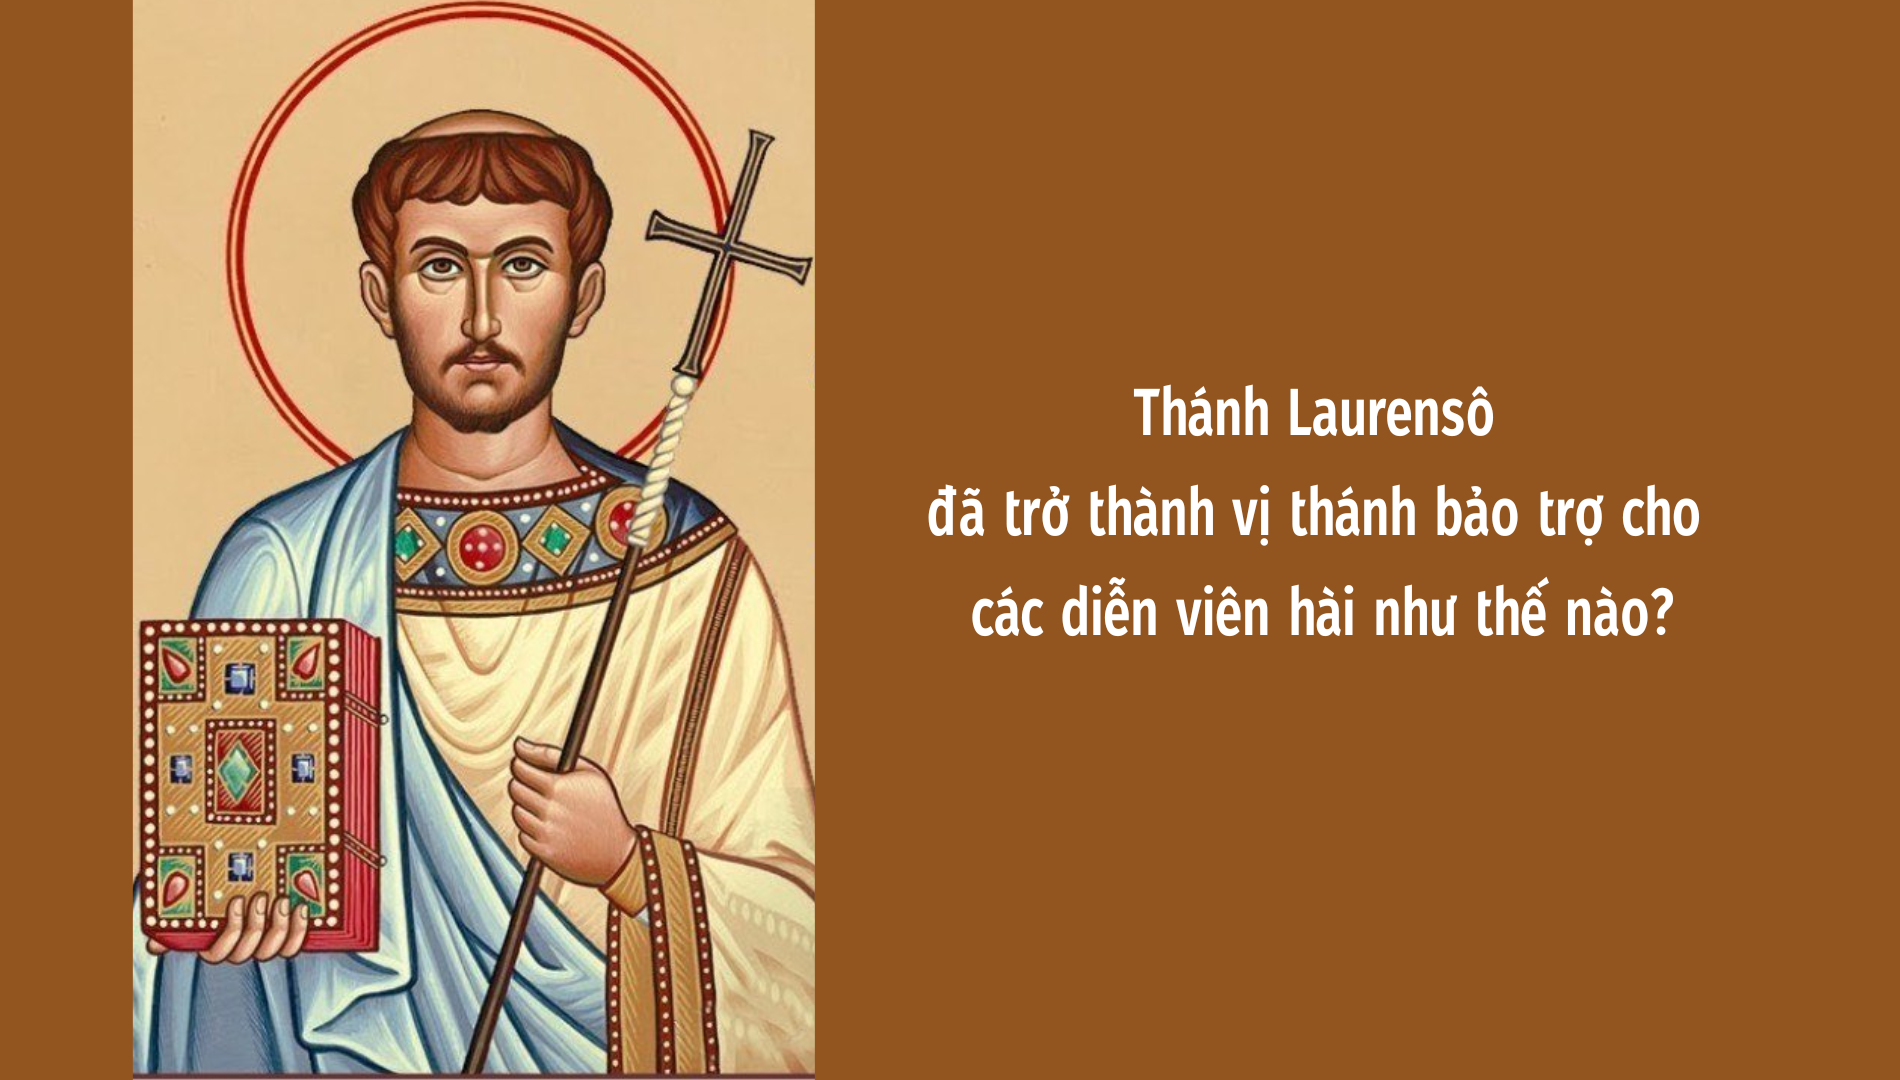 Thánh Laurensô đã trở thành vị thánh bảo trợ cho các diễn viên hài như thế nào?